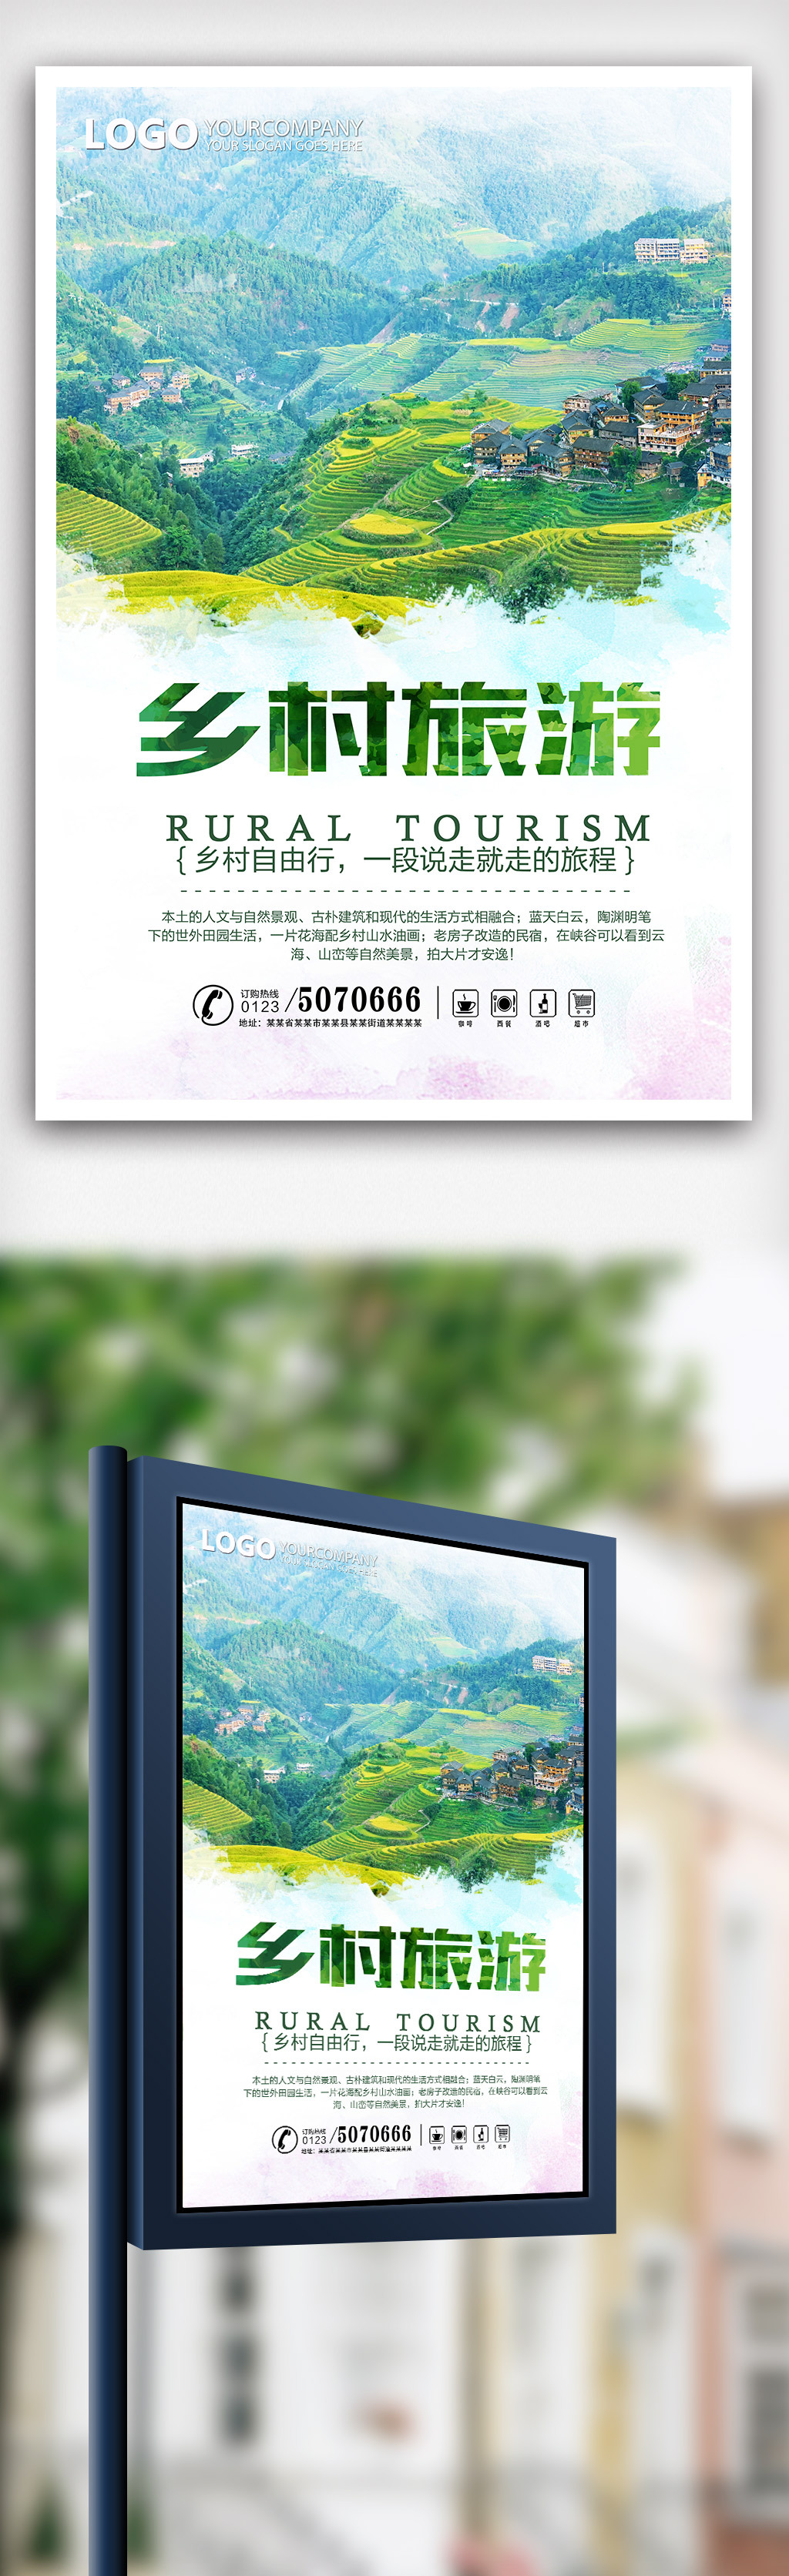 绿色清新最美乡村旅游海报设计图片